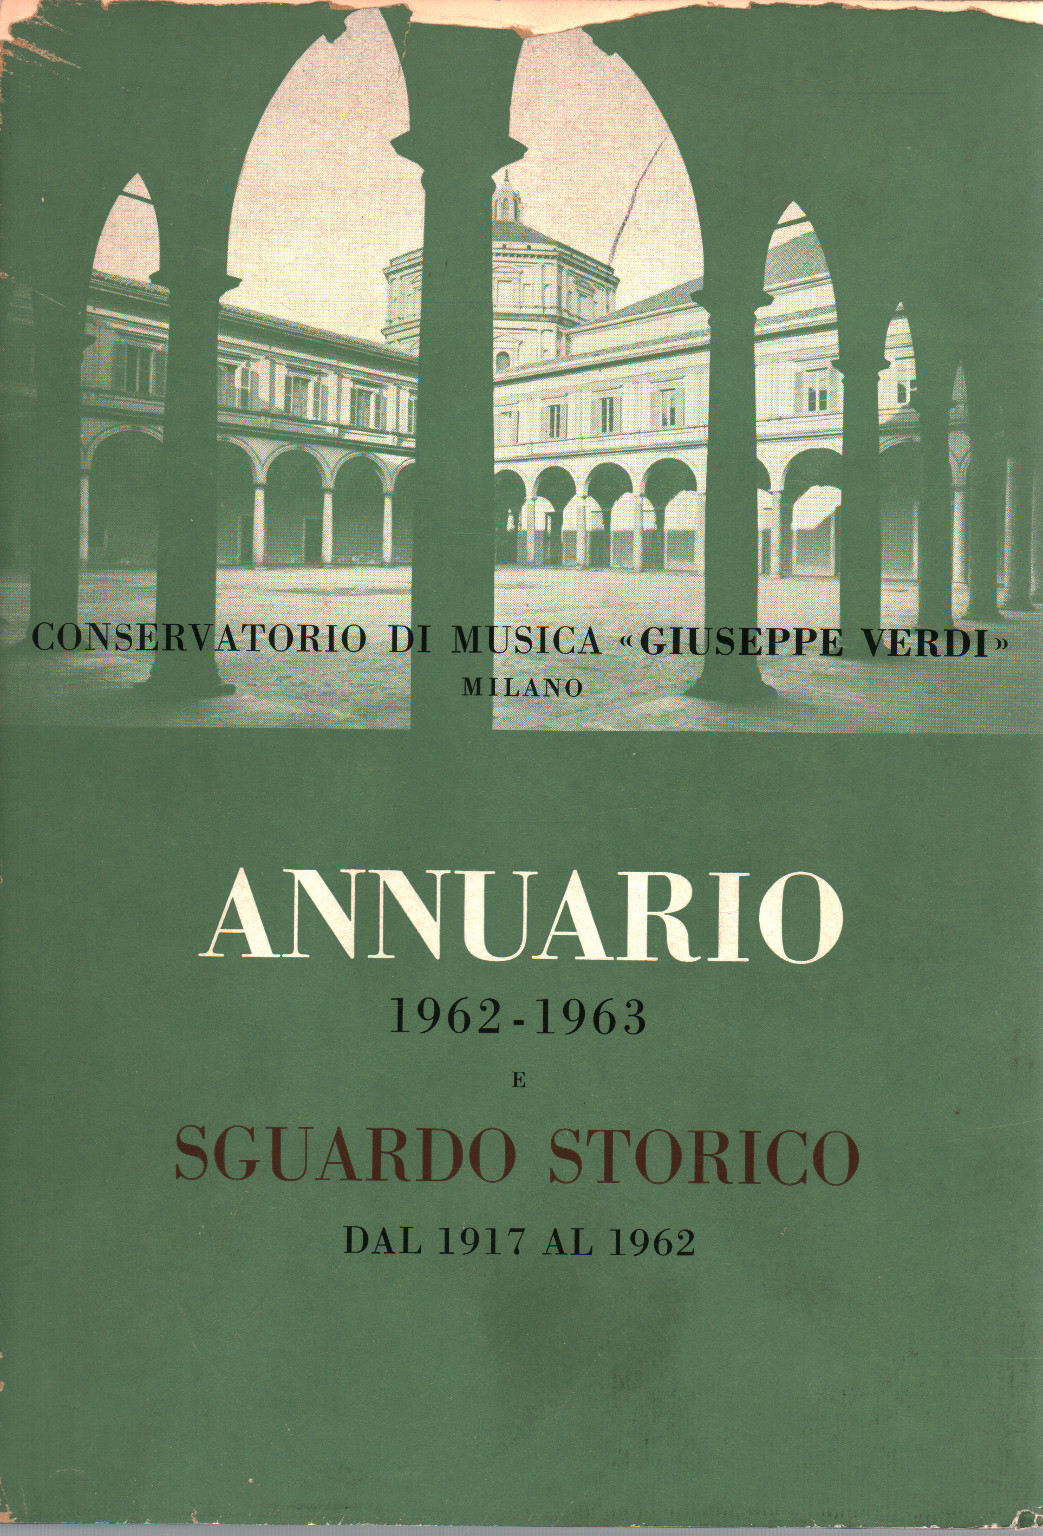 Annuario dell'anno accademico 1962-63 e Sguardo S, s.a.